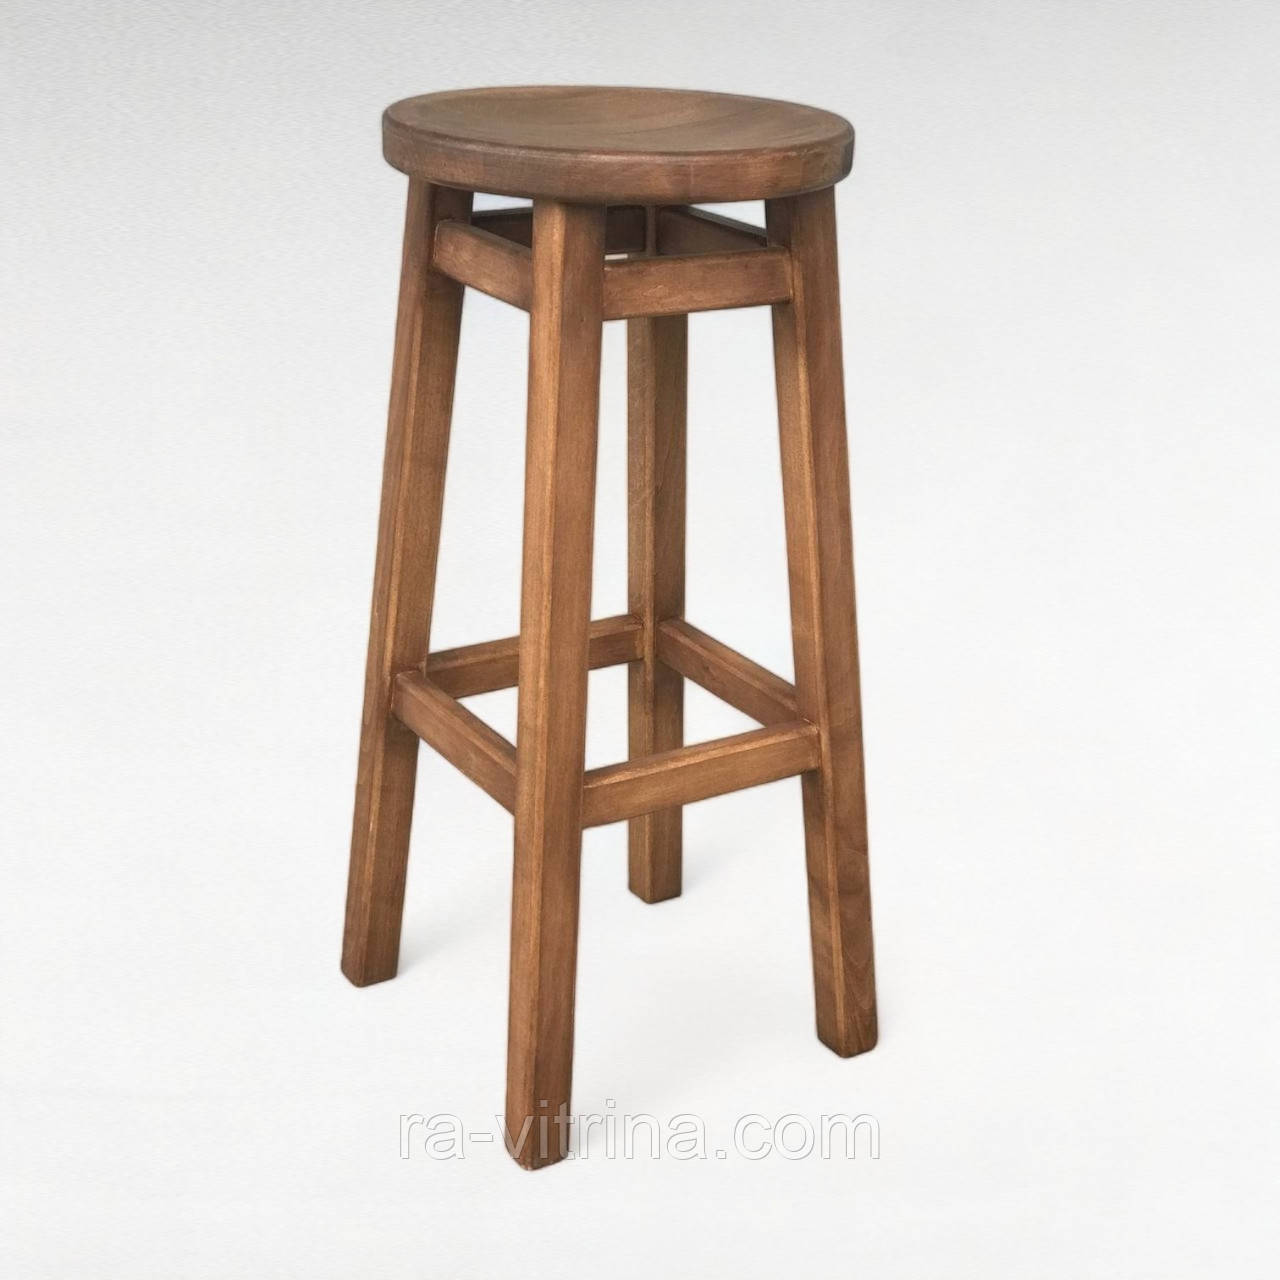 Високий барний стілець КОМФОРТ з дерева для барів, пабів, кафе, кухні Табурет круглий дерев'яний без спинки